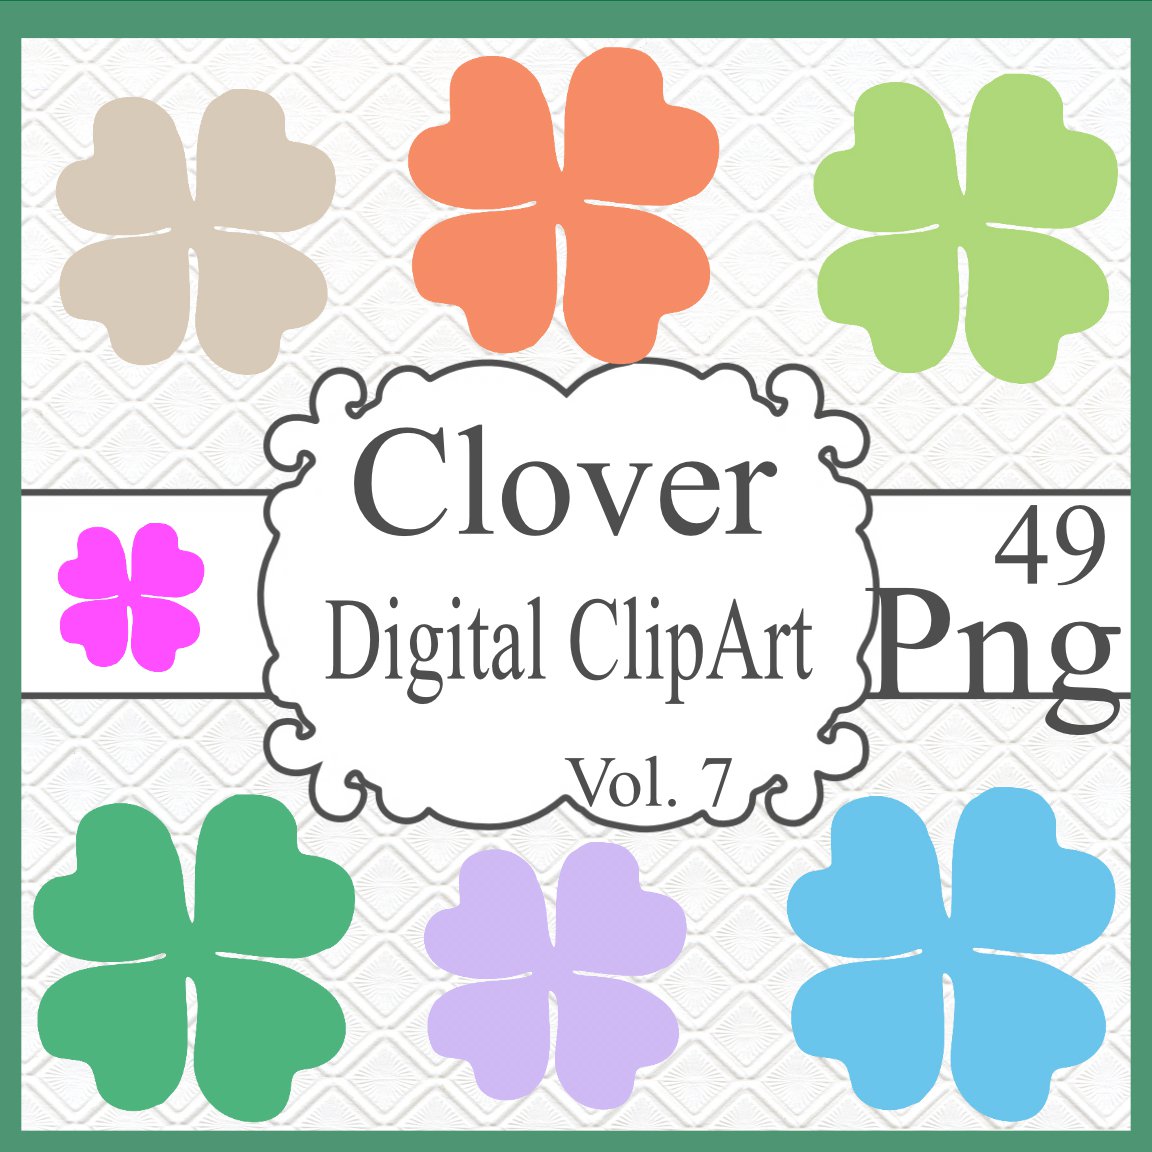 Clover Digital ClipArt Vol. 7